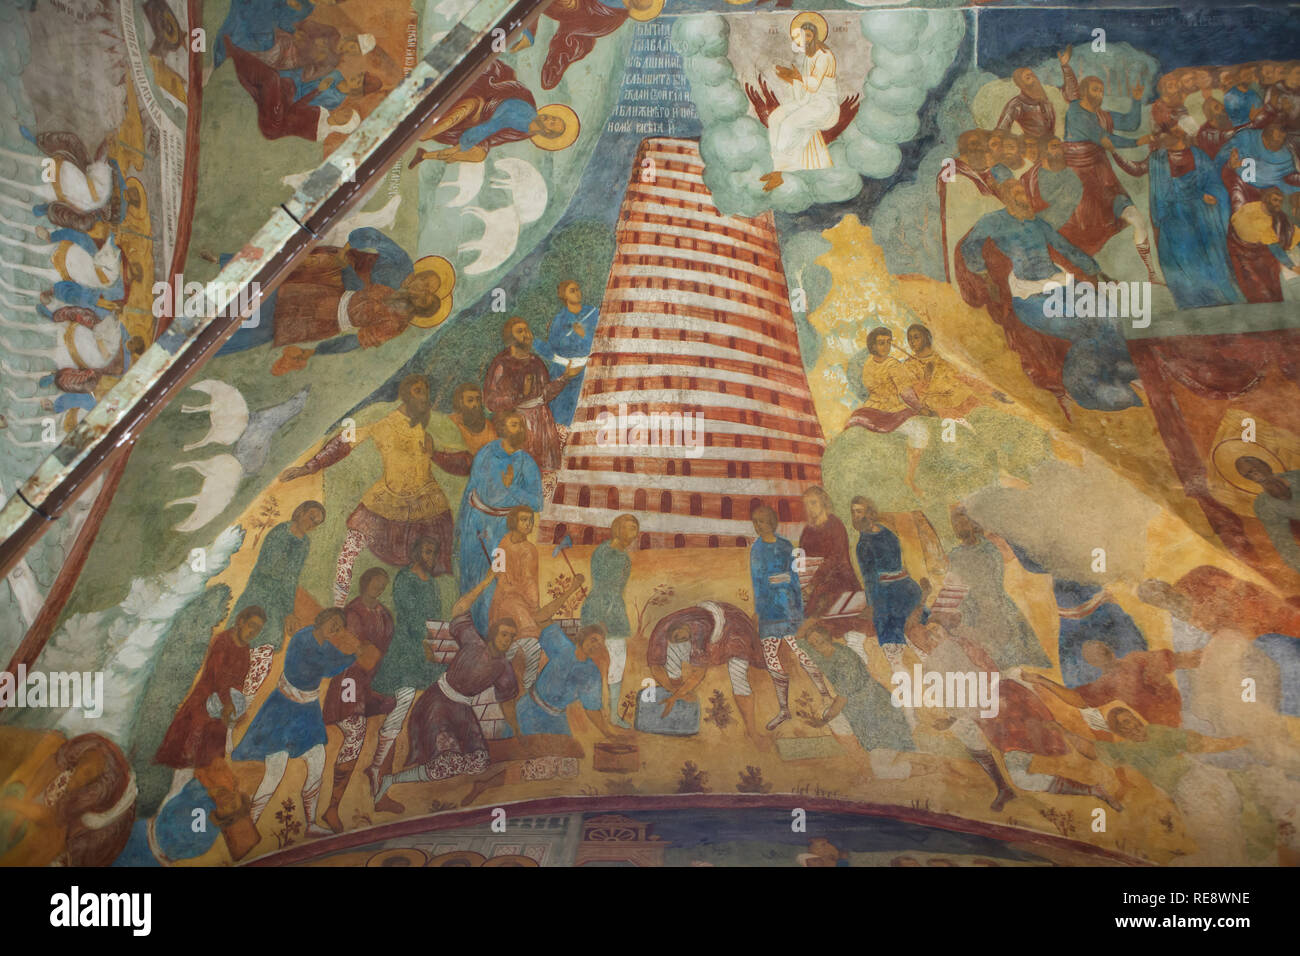 Turm zu Babel in das Fresko von Russische Ikone Maler Gury Nikitin und Sila Savin (1680) im Westen Galerie (papert) der Kirche von dem Propheten Elia in Jaroslawl, Russland dargestellt. Stockfoto